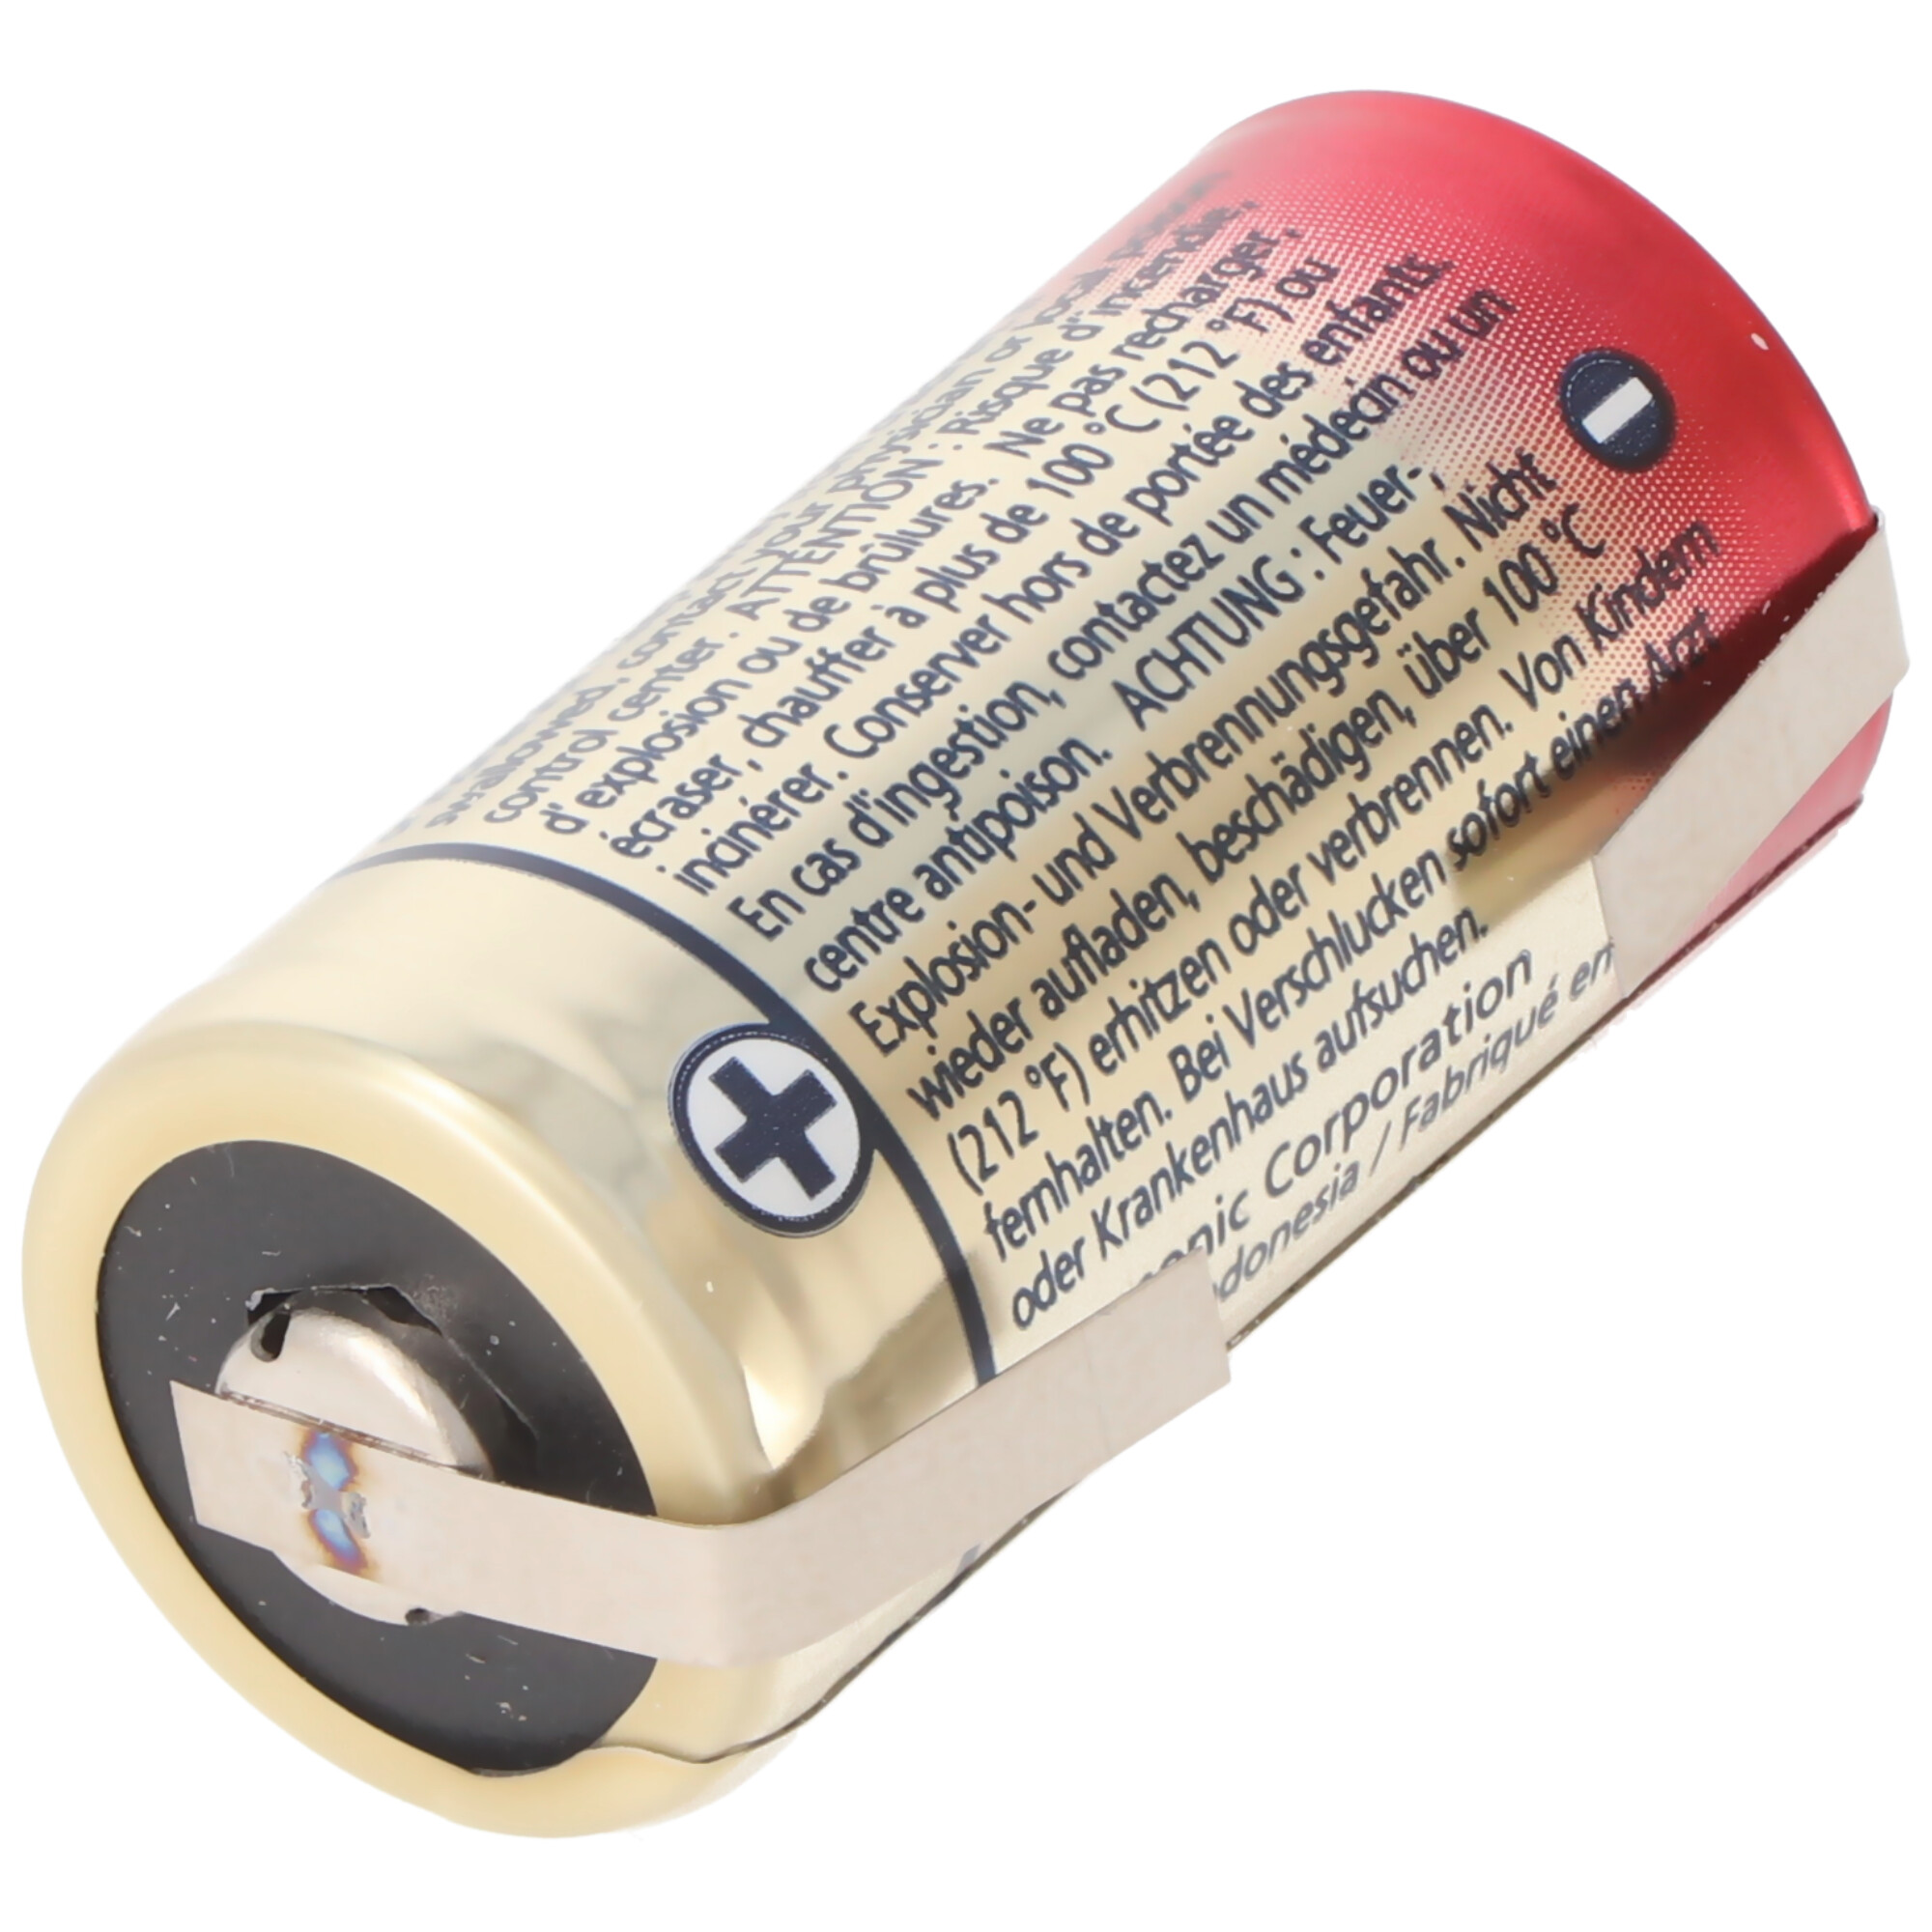 Panasonic Photo Power CR123A Lithium Batterie 3 Volt Lithium Batterie, wählbar mit Lötfahnen in Z-Form und in U-Form